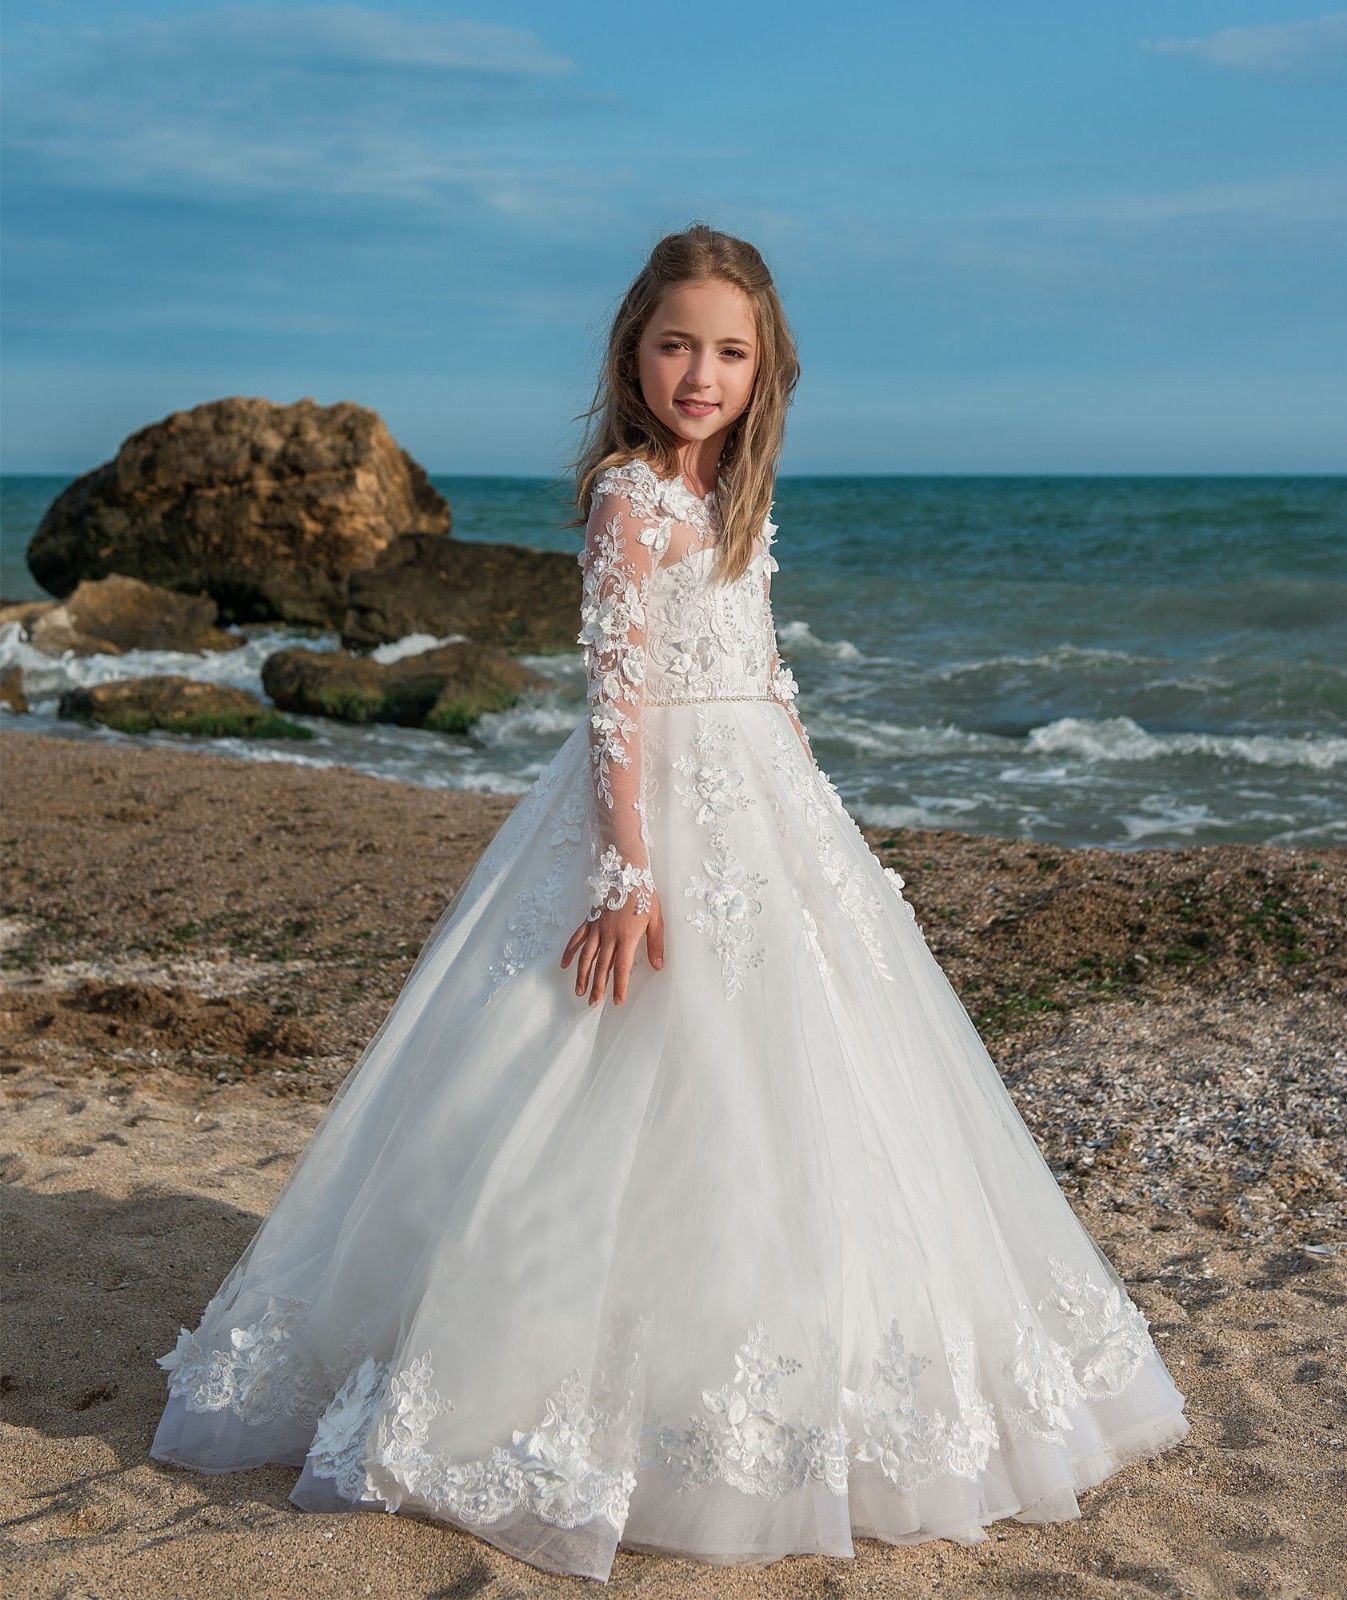 2018Neu Perlen Blumenmadchen Kinder Kleid Kommunion Prinzessin Madchen Ballkleid